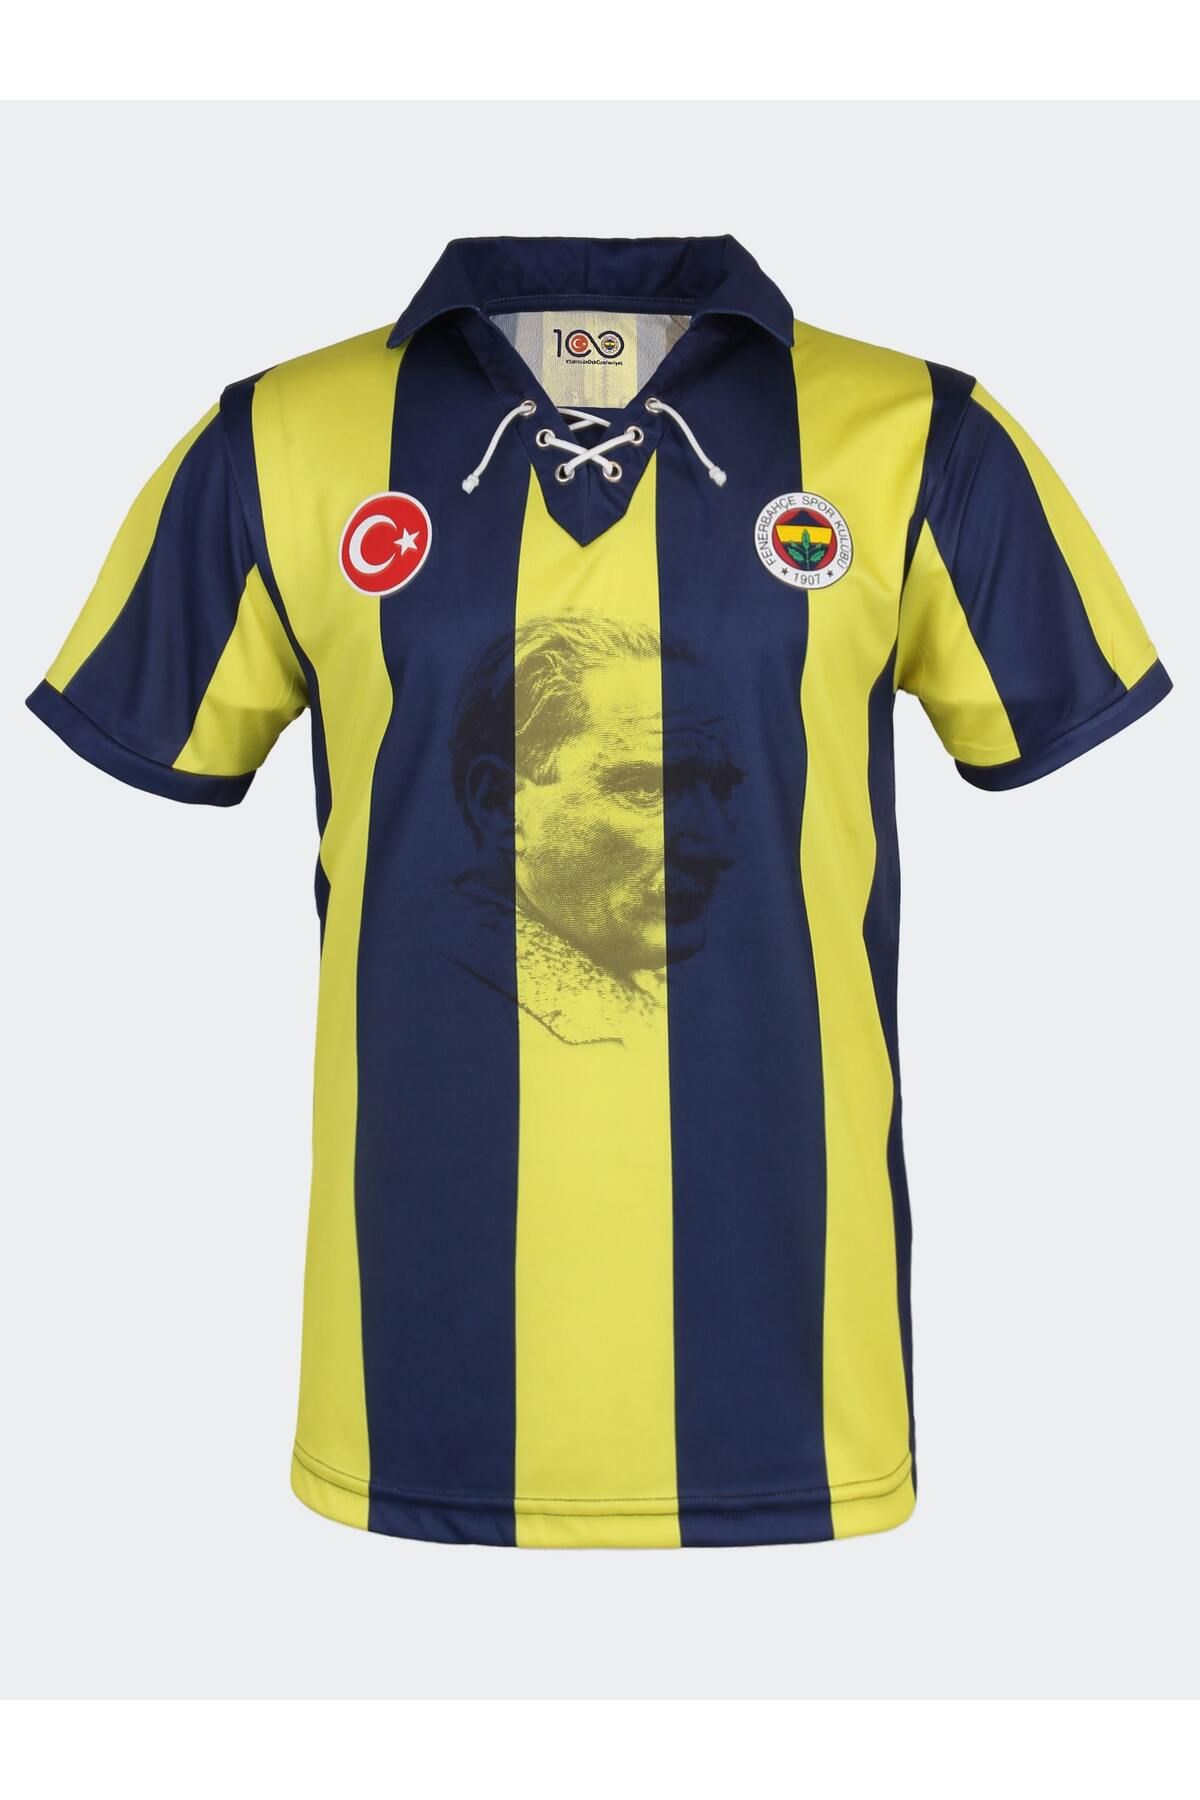 Fenerbahçe FB 23 CUMHURİYETİN 100. YILI FORMA